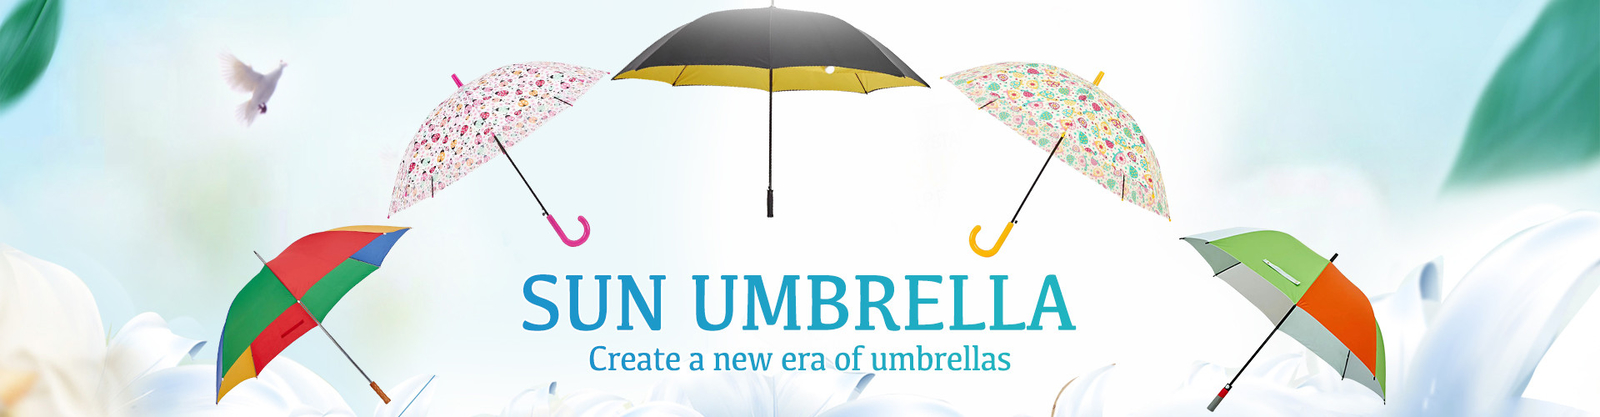 paraguas compacto del golf